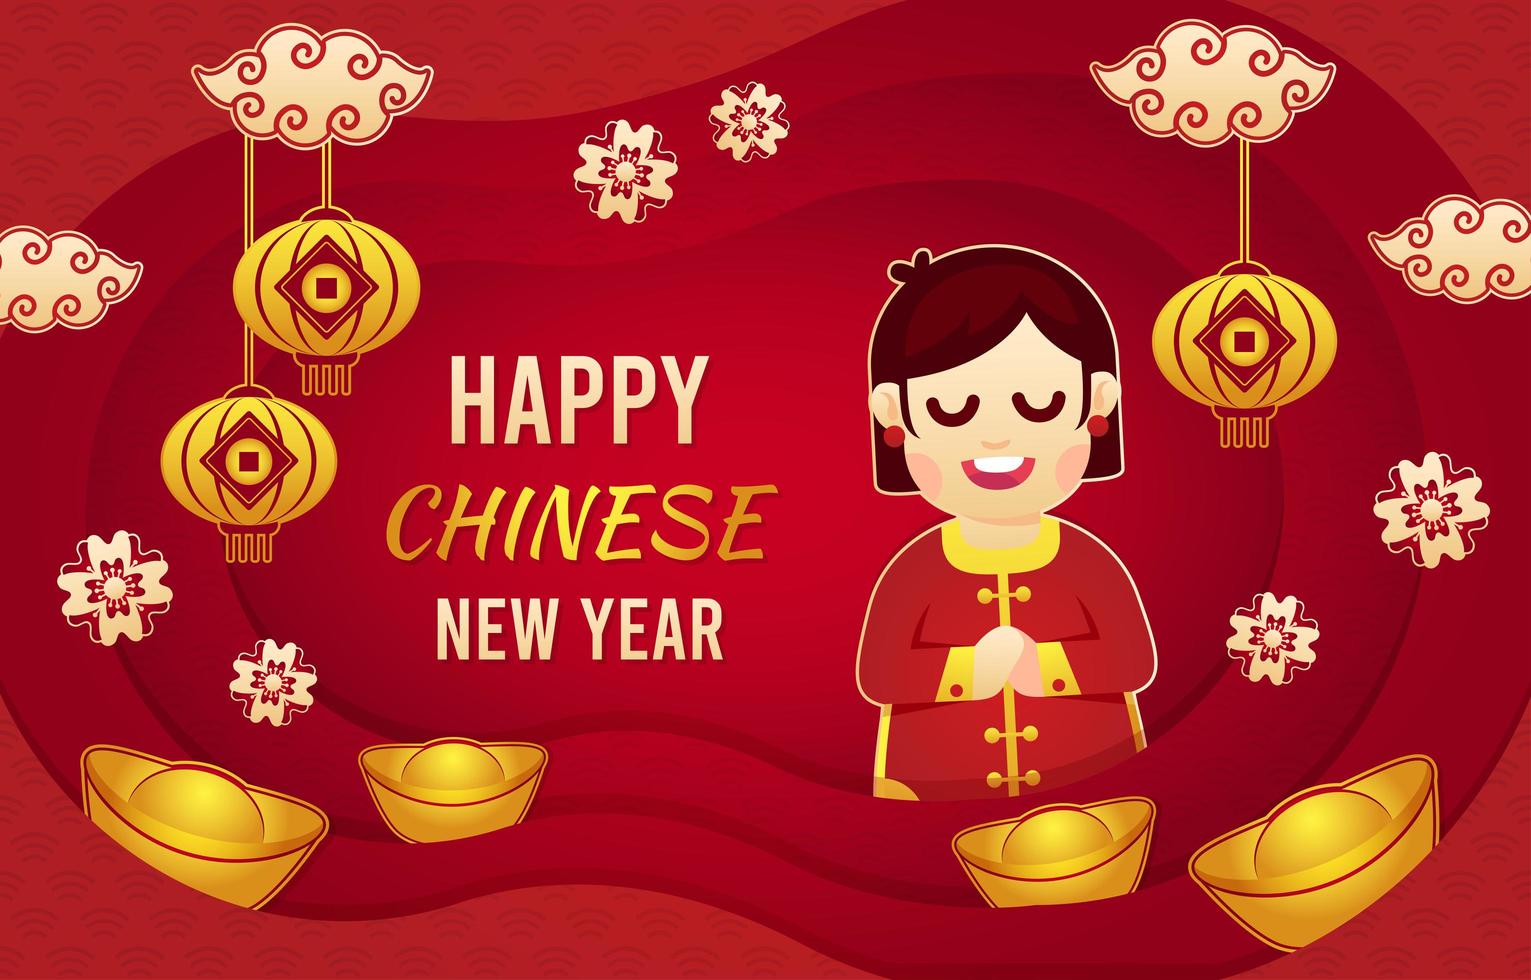 ano novo chinês cortado em papel dourado vetor